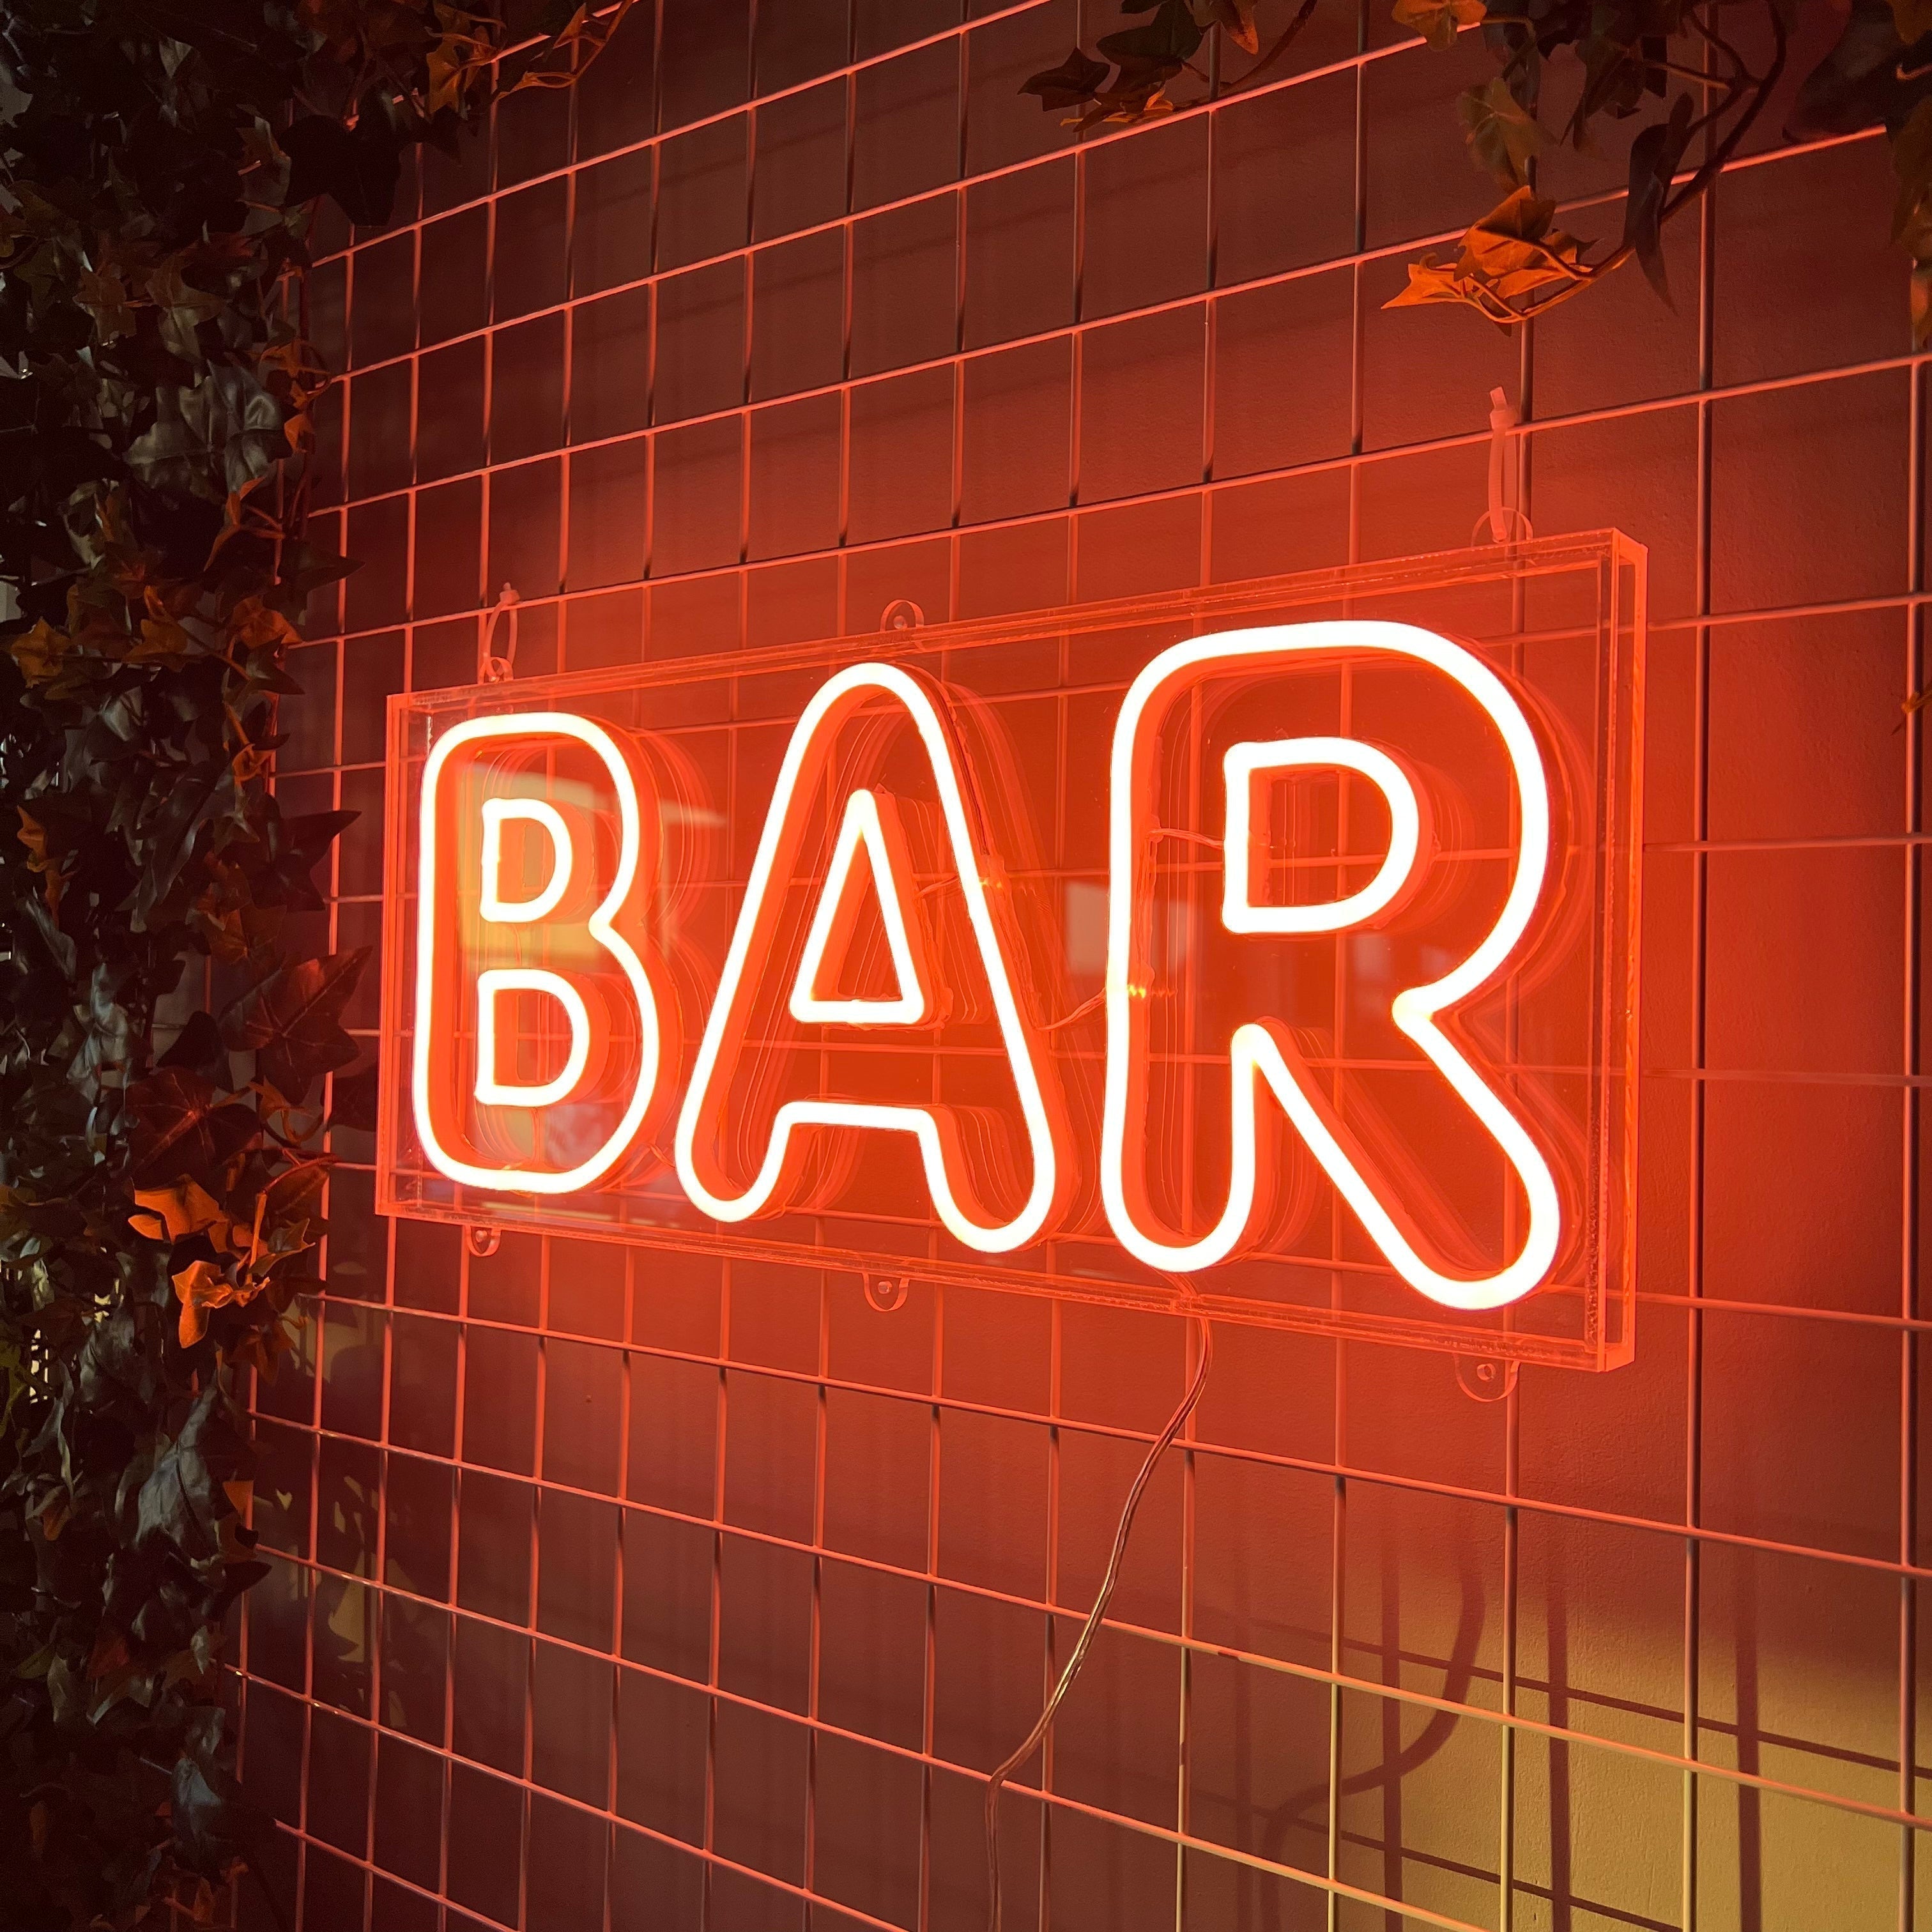 Skap en levende og trendy atmosfære med vårt 'bar' led-neonskilt, ideelt for innendørs og utendørs bruk takket være sin vanntette design. Lys opp din bar med et skilt som kombinerer moderne estetikk med praktisk funksjonalitet.